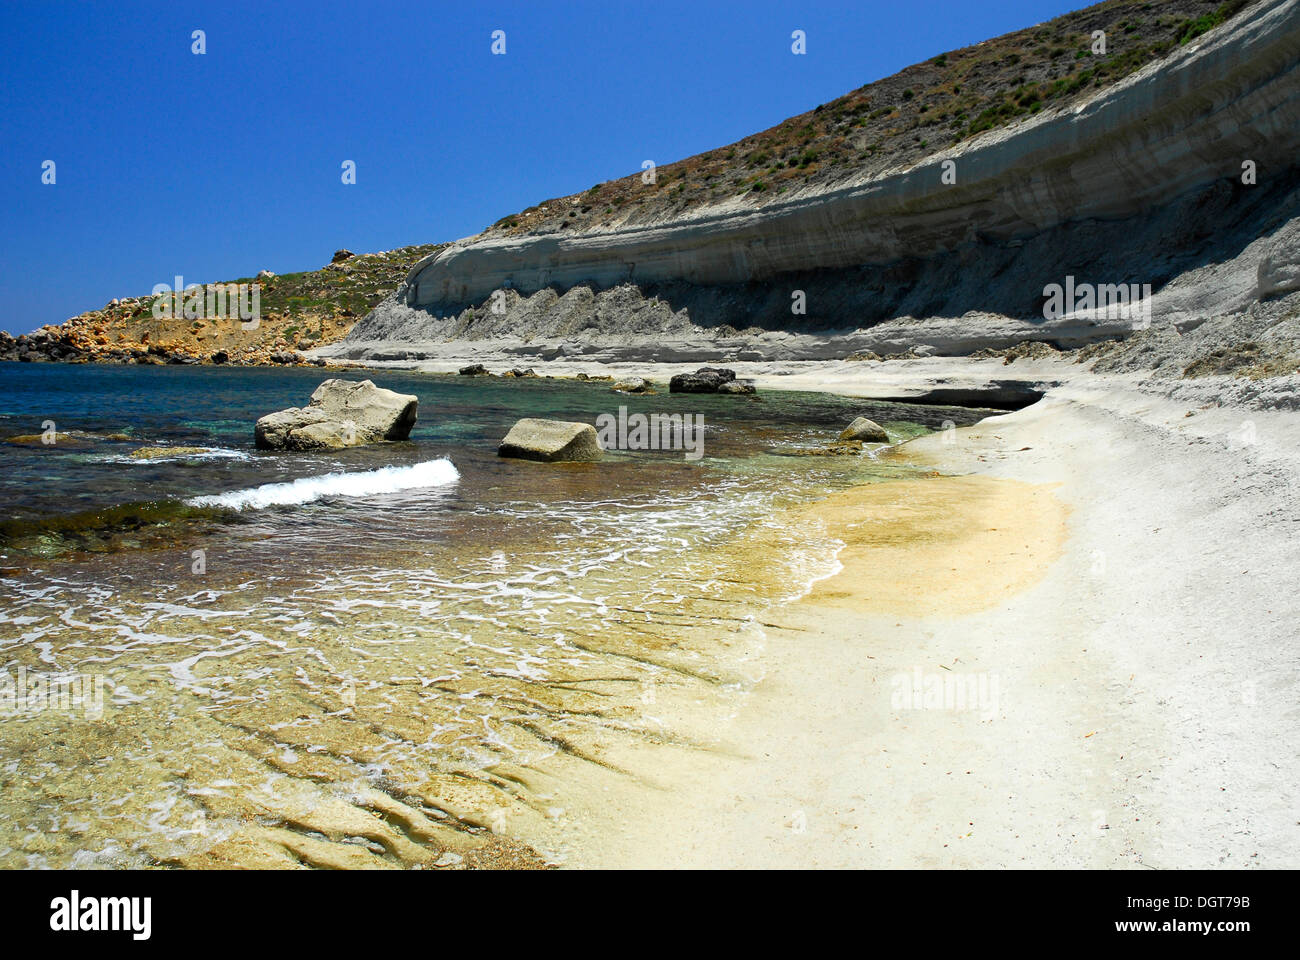 Côte Rocheuse, la baie de Marsalforn, Marsalforn, île de Gozo, Malte, mer Méditerranée, Europe Banque D'Images